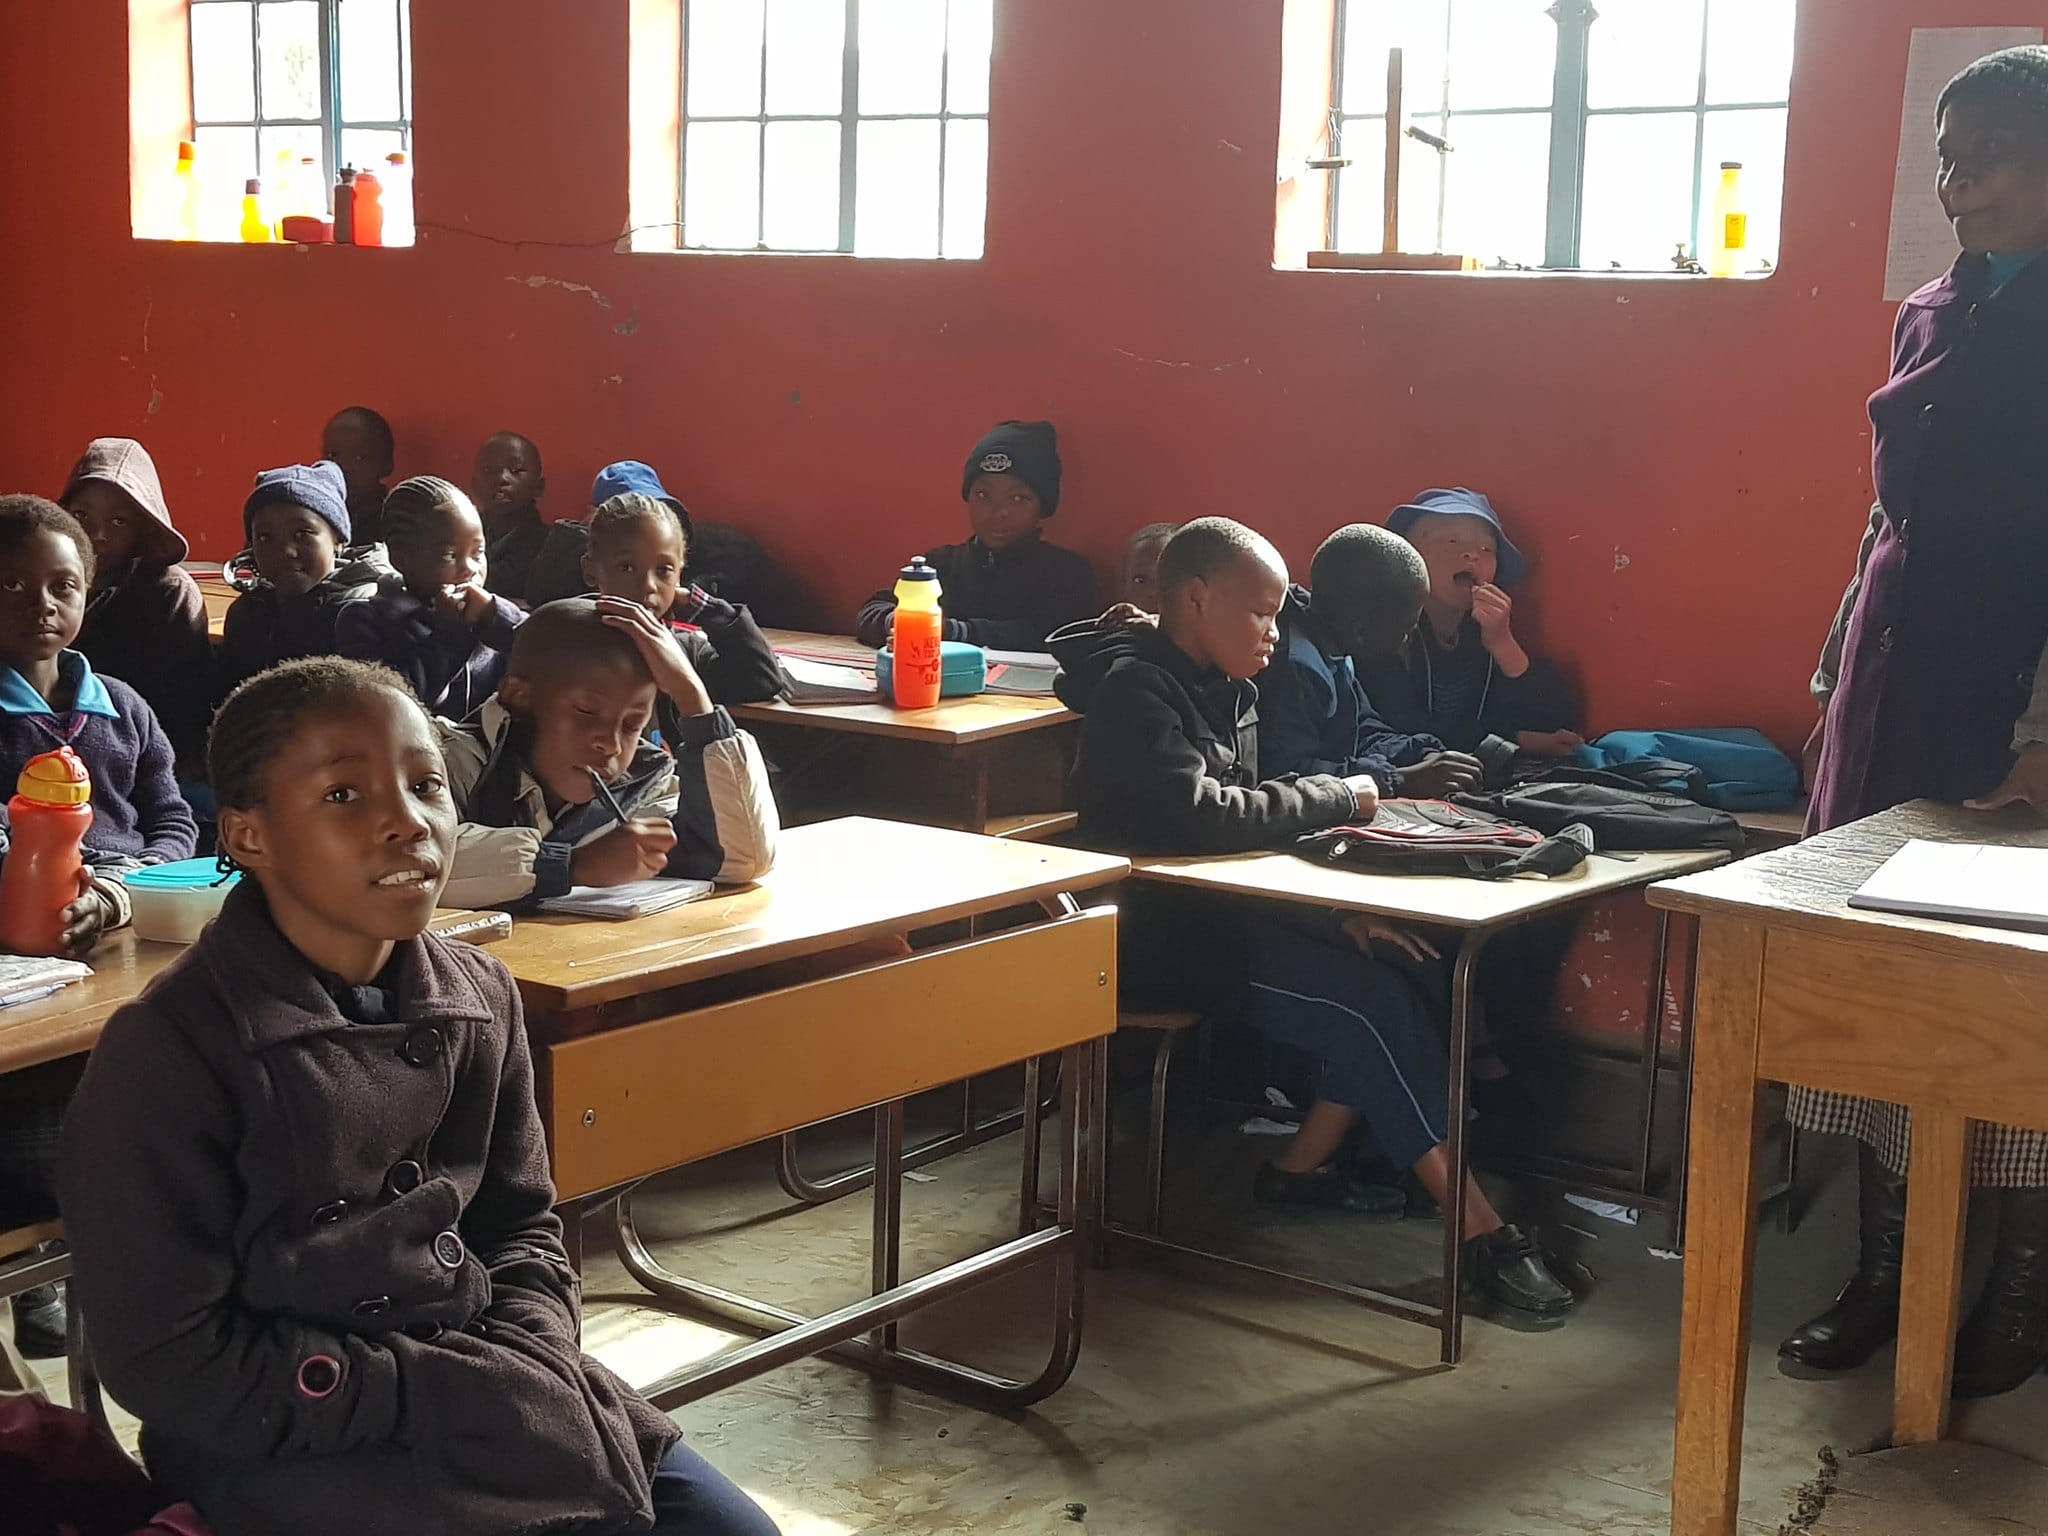 Istruzione inclusiva in una classe dell'Africa sub-sahariana. Flickr/USAID in Africa in licenza CC